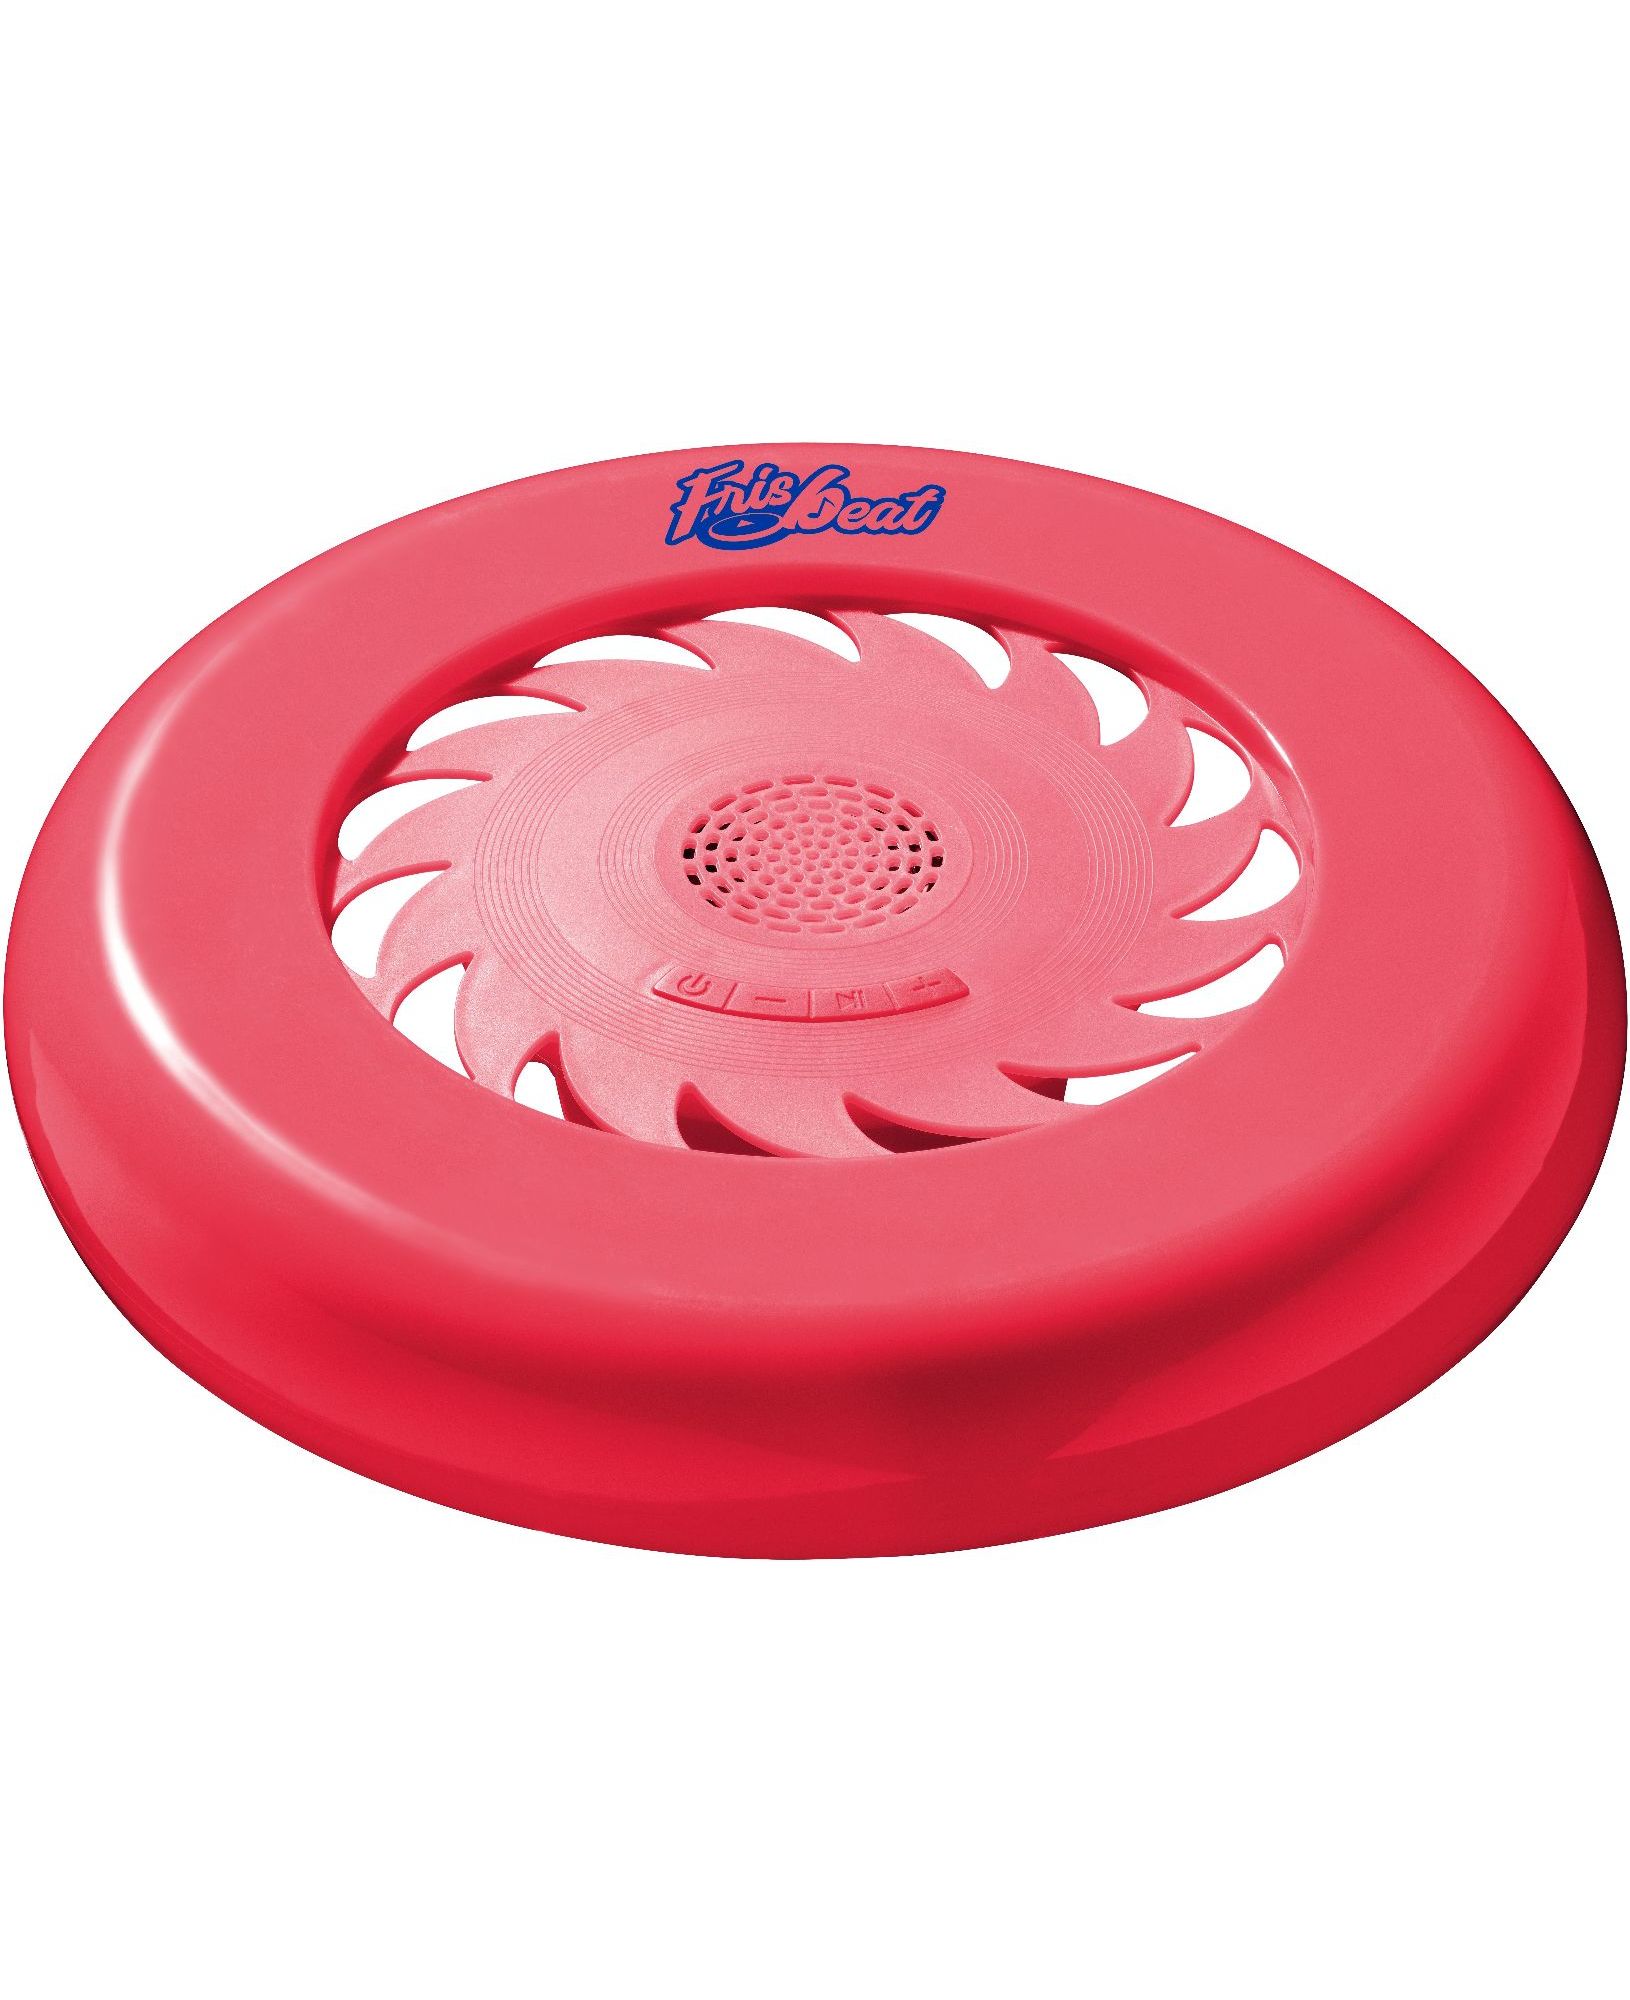 Frisbeat, speaker frisbee BT, red